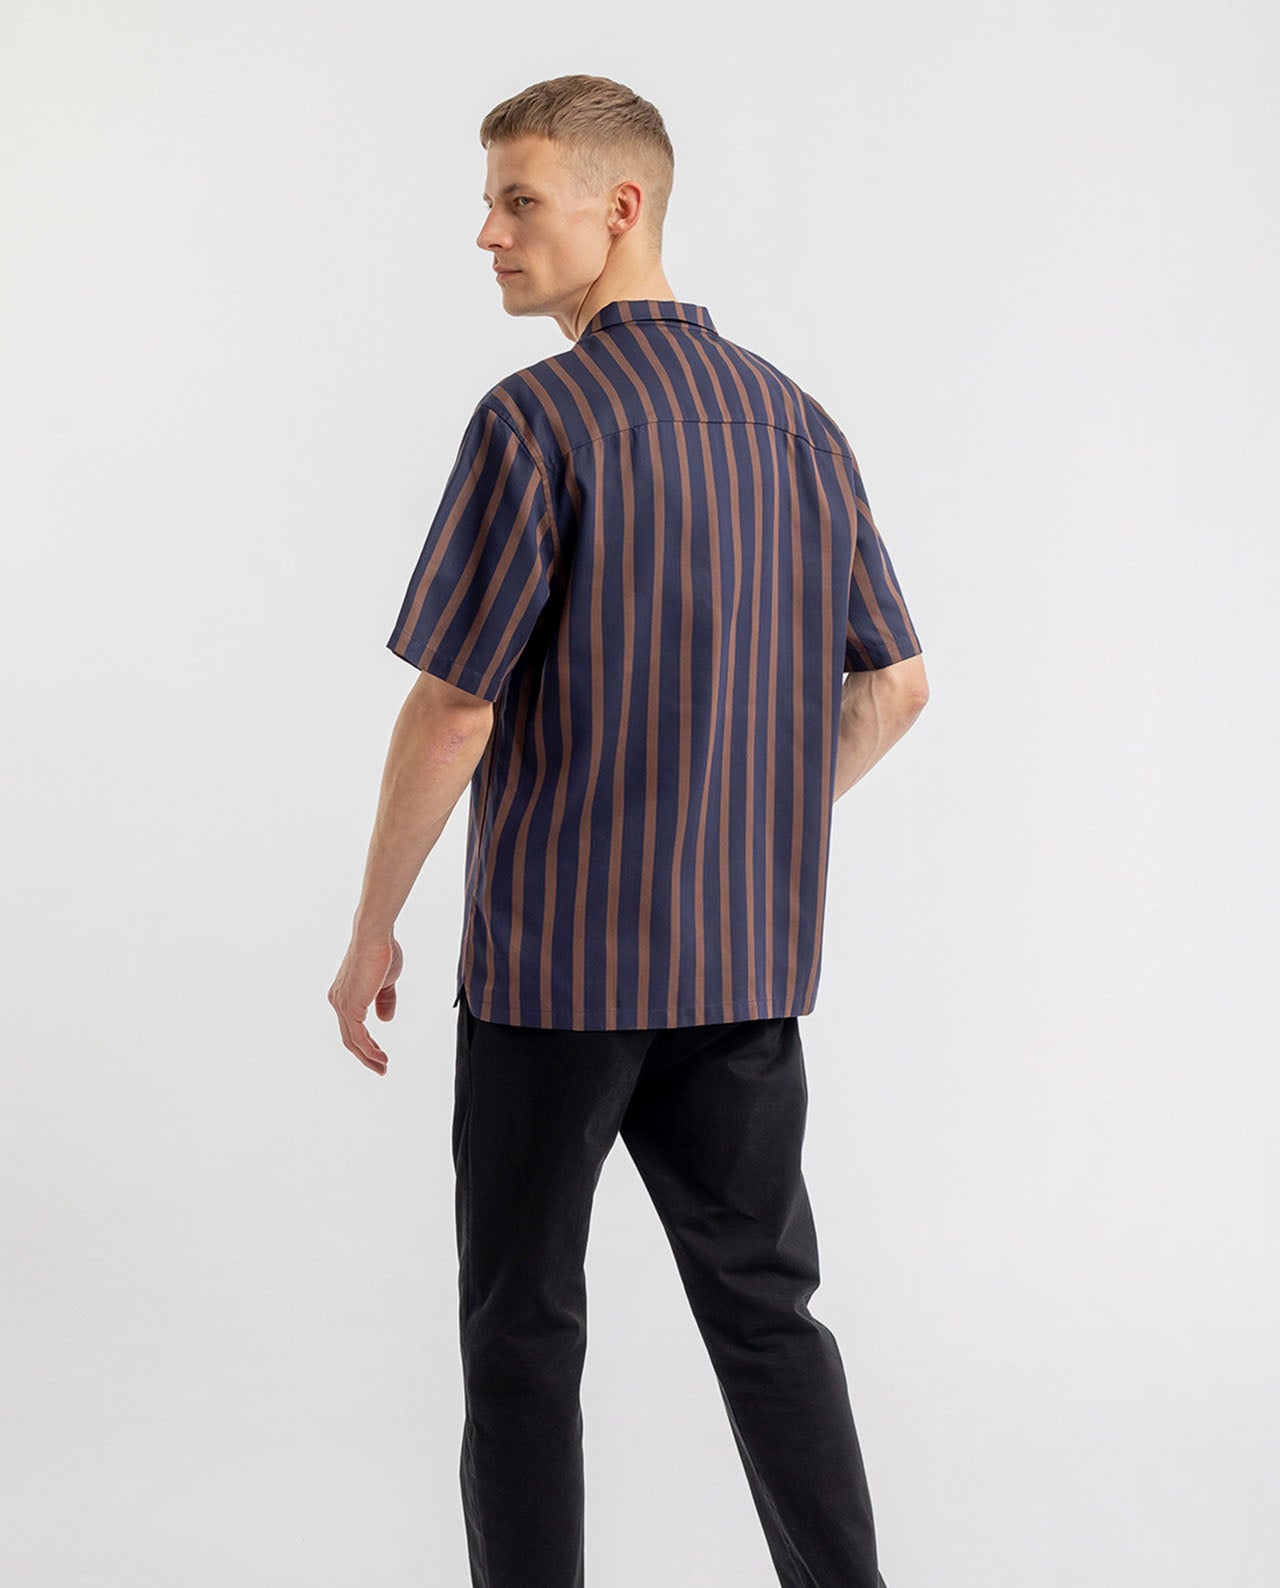 marché commun rotholz chemise manches courtes homme éco-responsable rayée 100% lyocel naturel bowling bleu marine et marron fabriquée en Europe